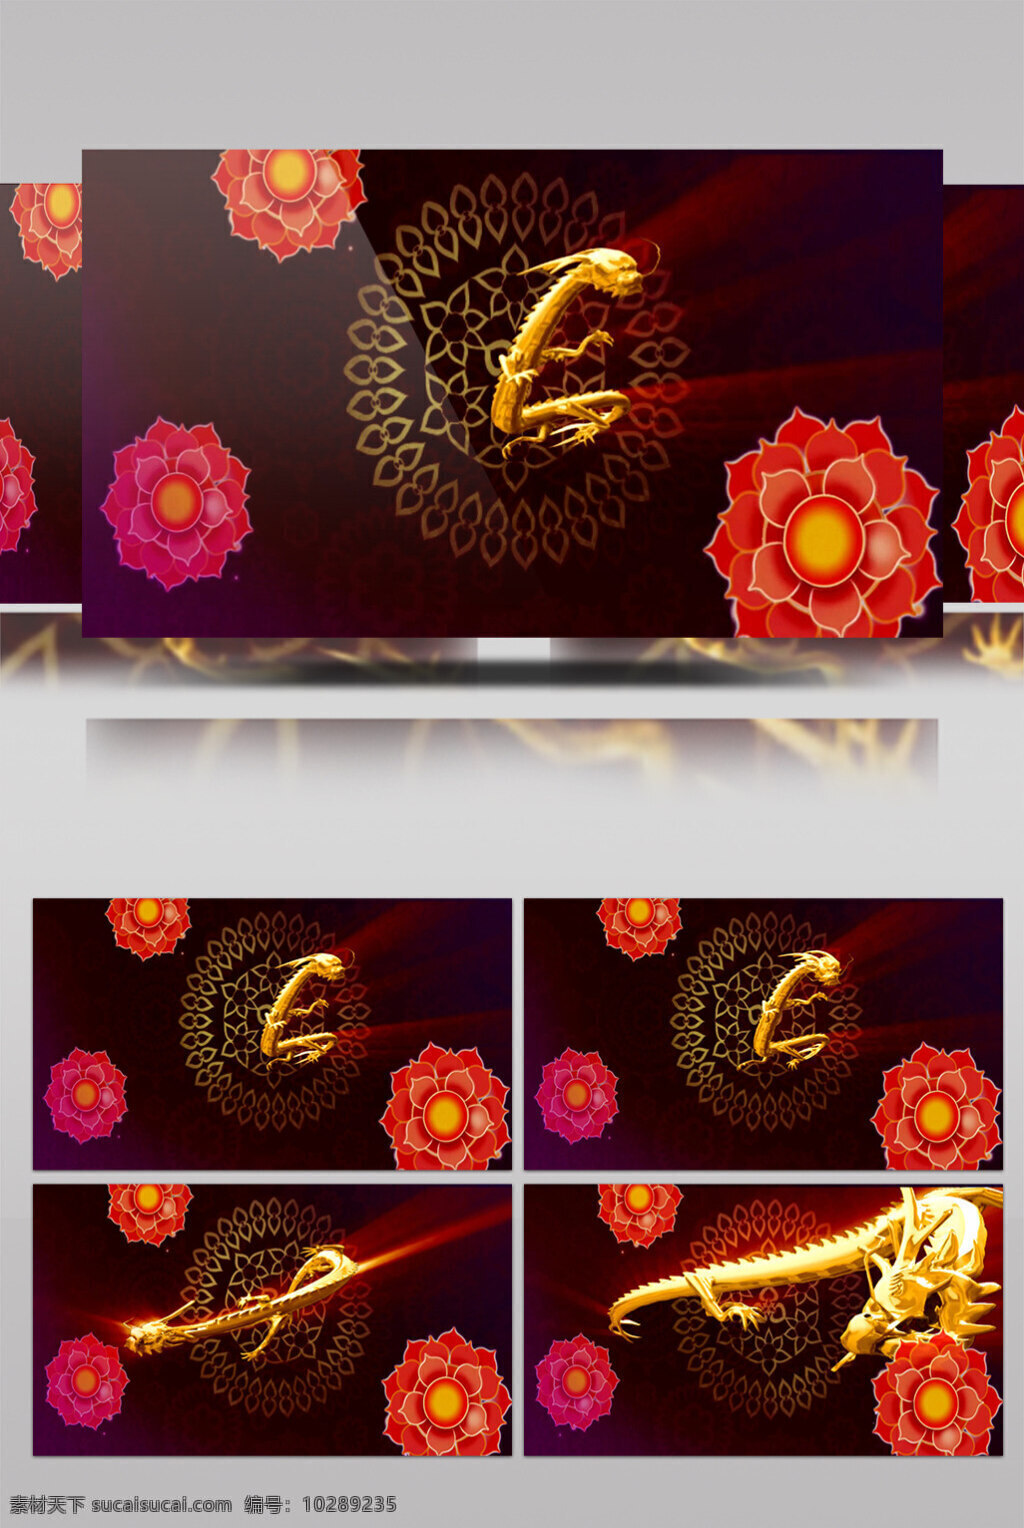 龙腾视频素材 飞龙在天 黄色龙舞 活抽象 画面意境 动态抽象 高清视频素材 特效视频素材